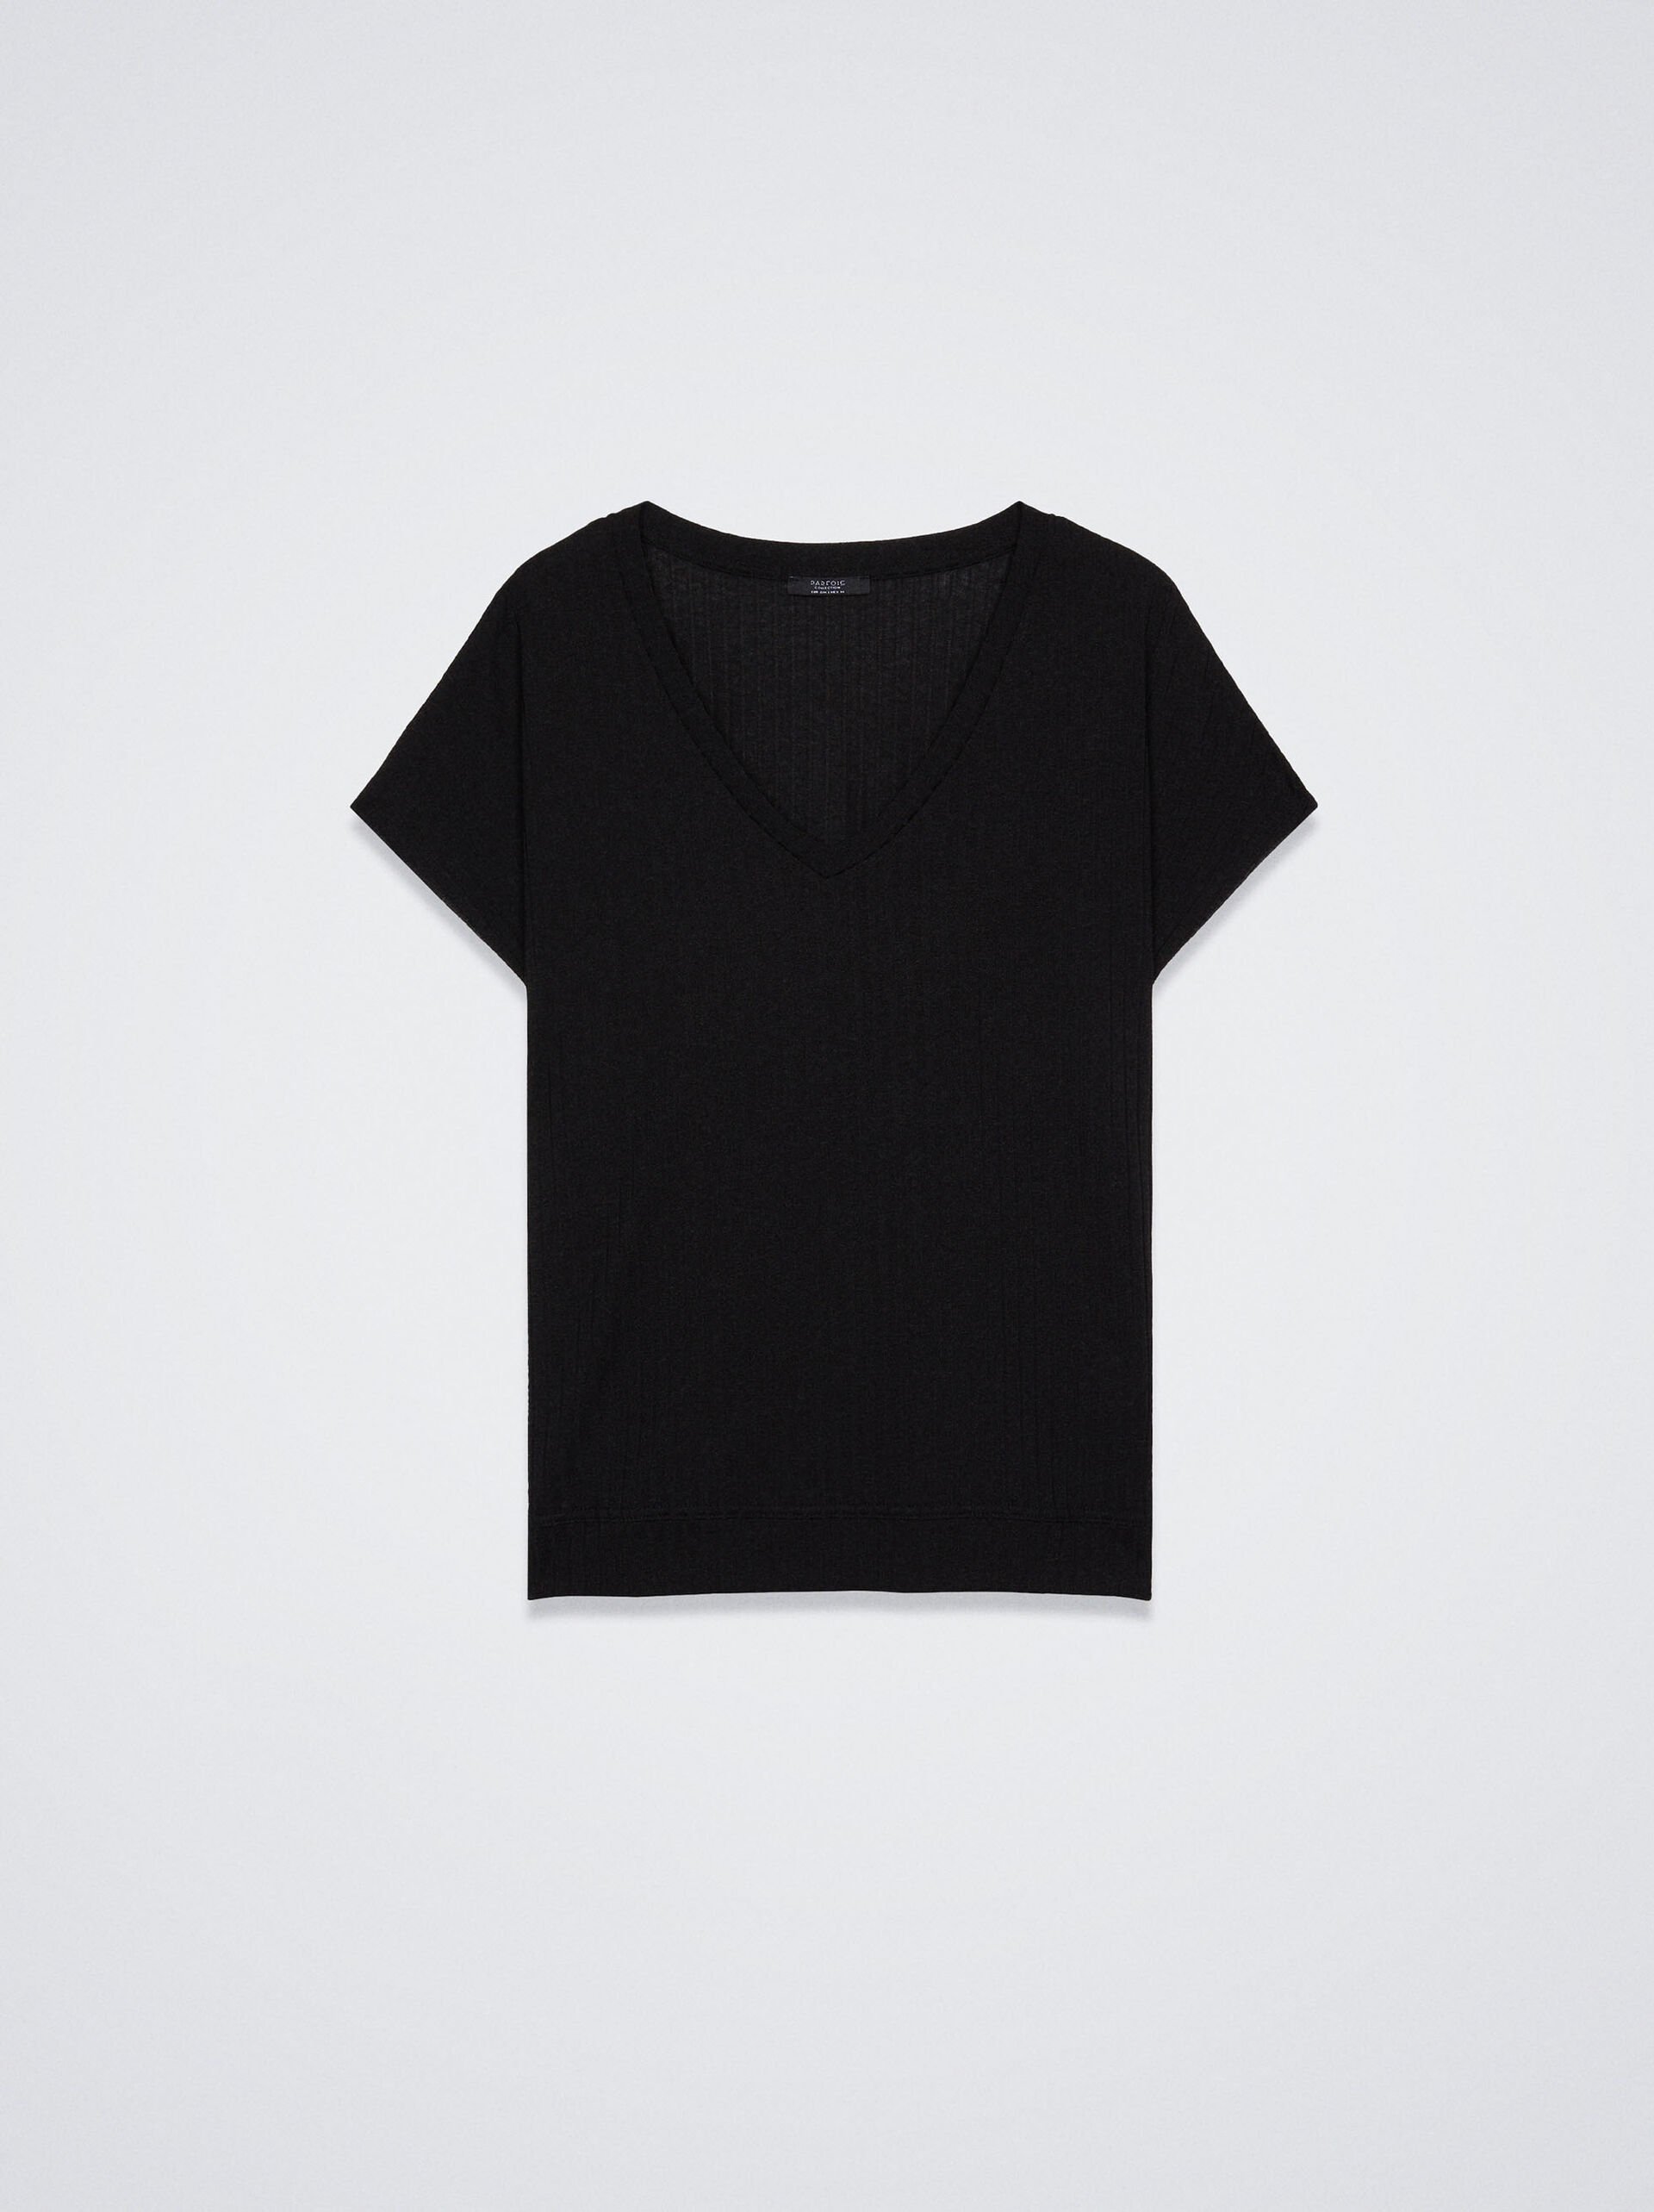 T-Shirt Realizzata Con Materiali Riciclati image number 0.0